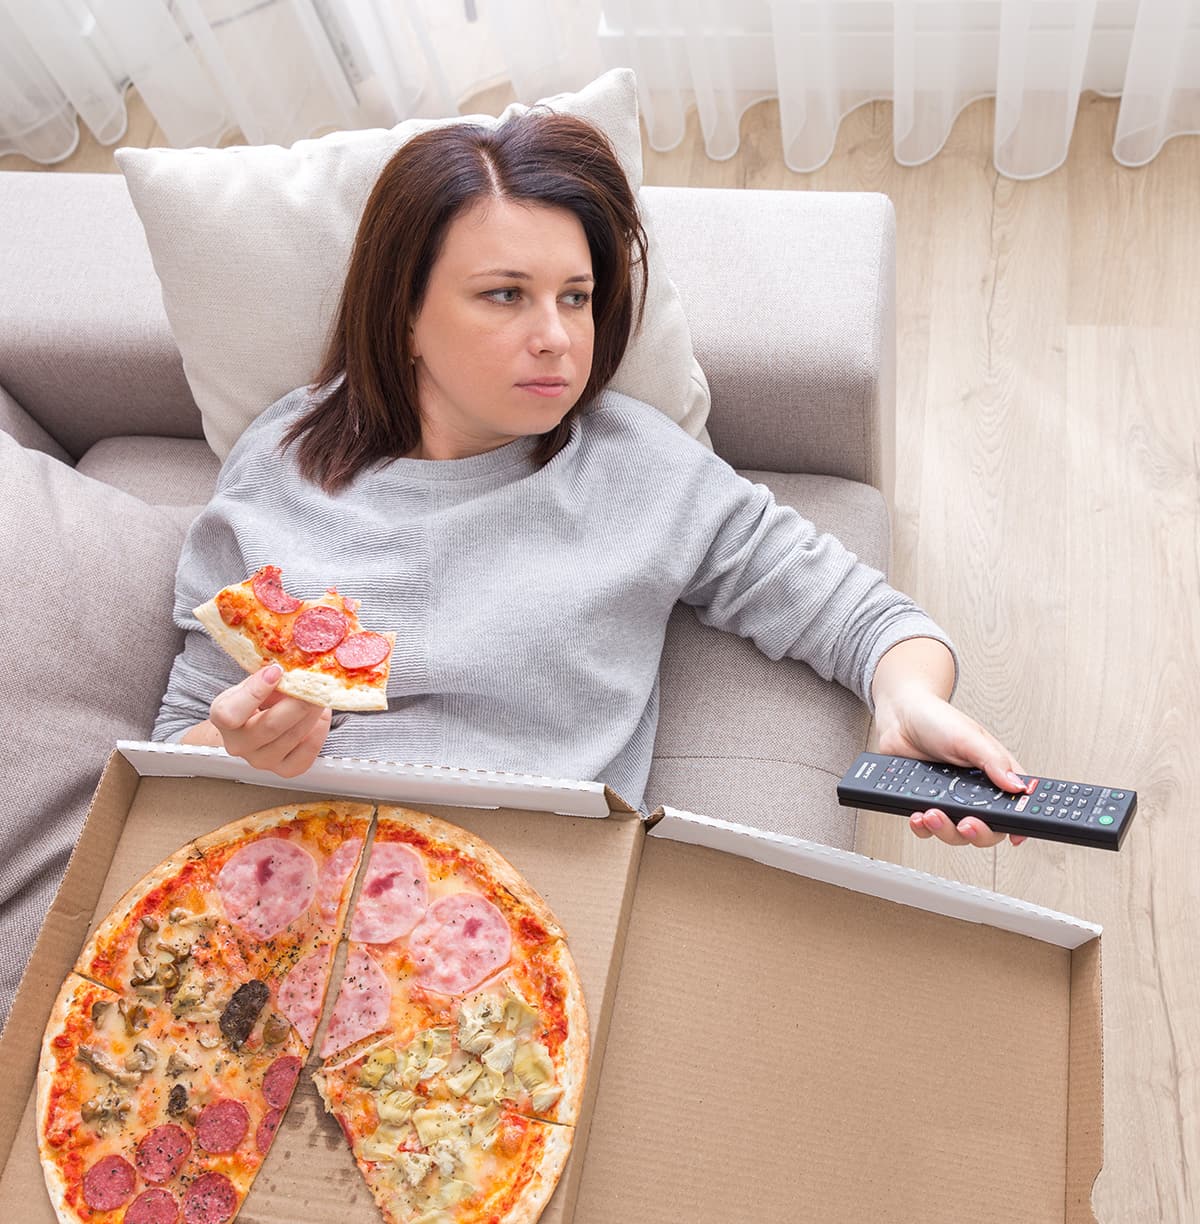 dame épuisée mange de la pizza sur son divan